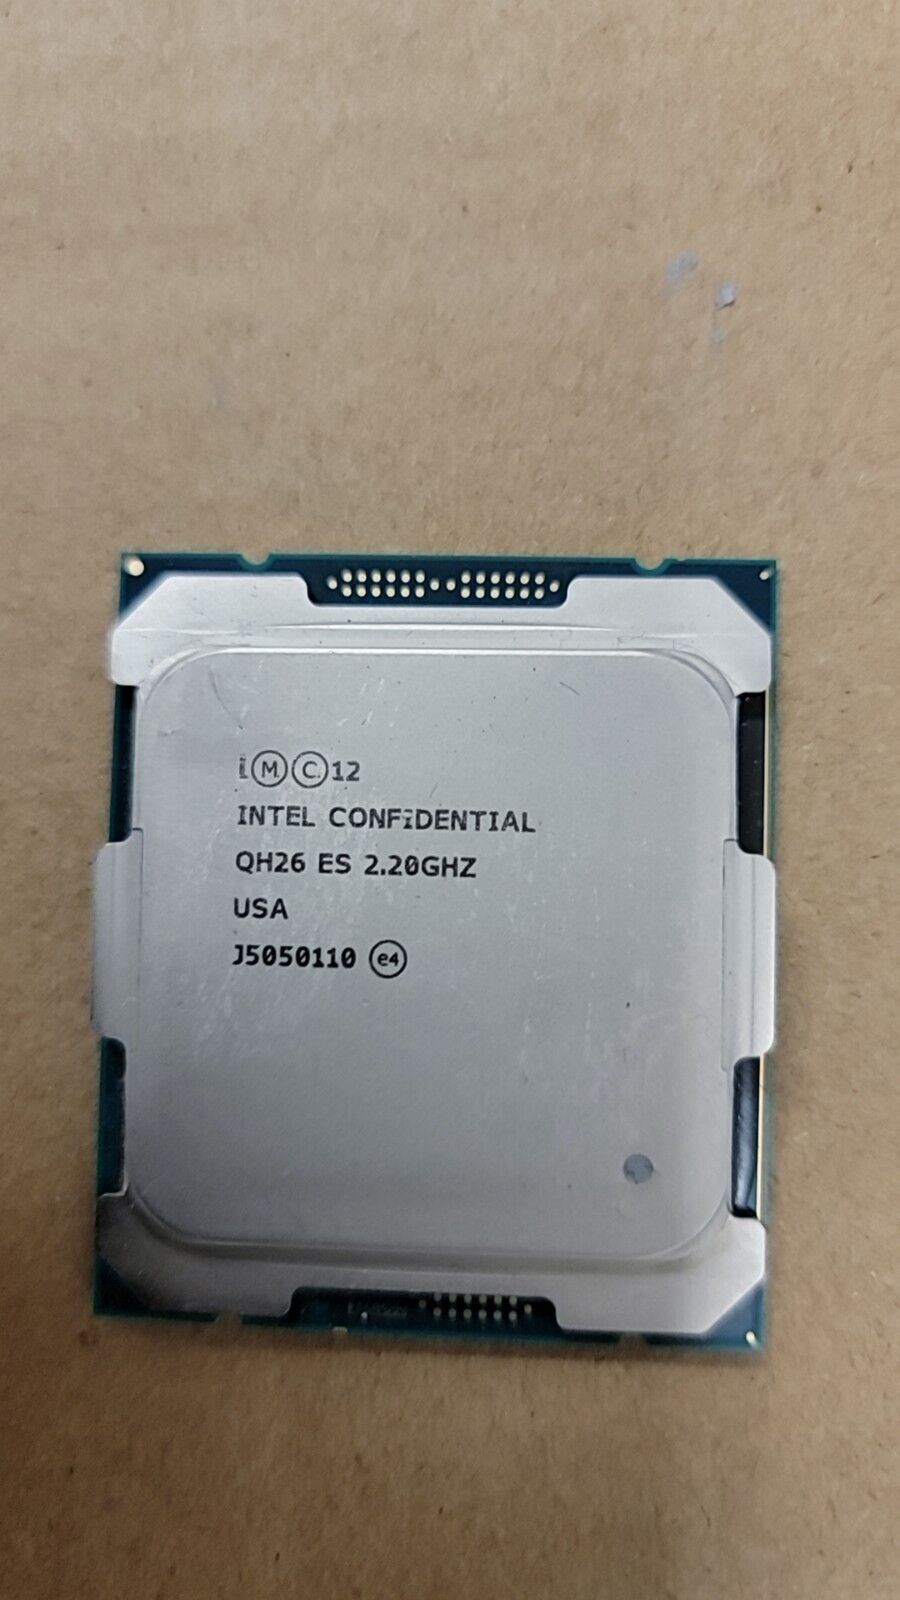 Intel CONFIDENTIAL Processor  QH26 E5  2.2Ghz 18-core LGA2011-3 CPU